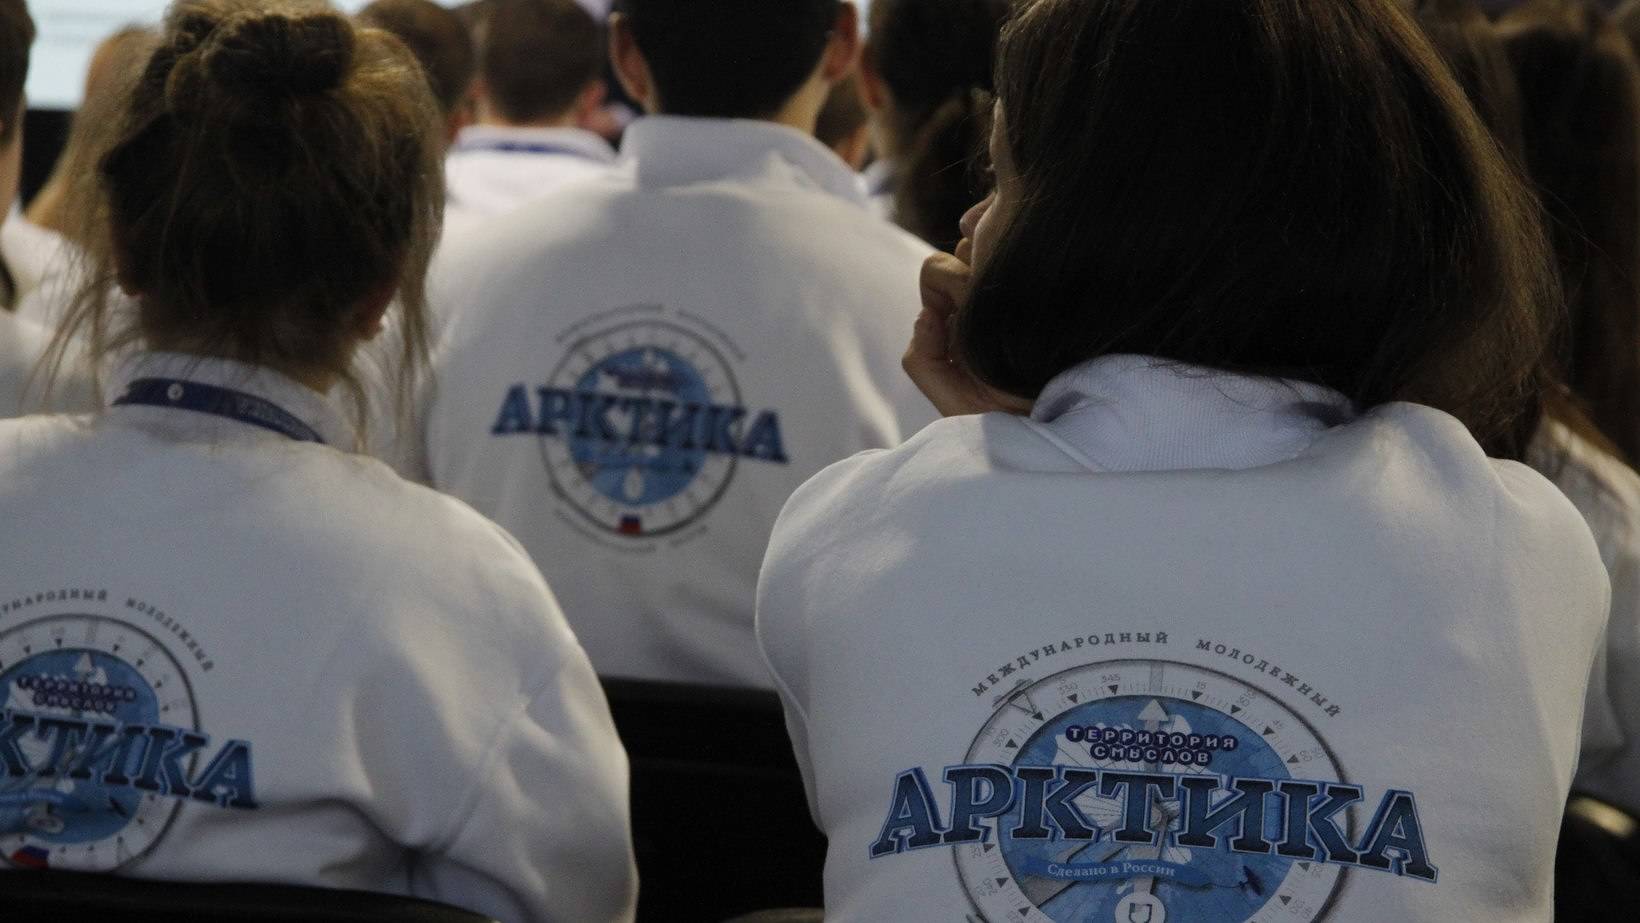 Молодёжный образовательный форум «Арктика. Сделано в России» пройдёт в Архангельске в сентябре